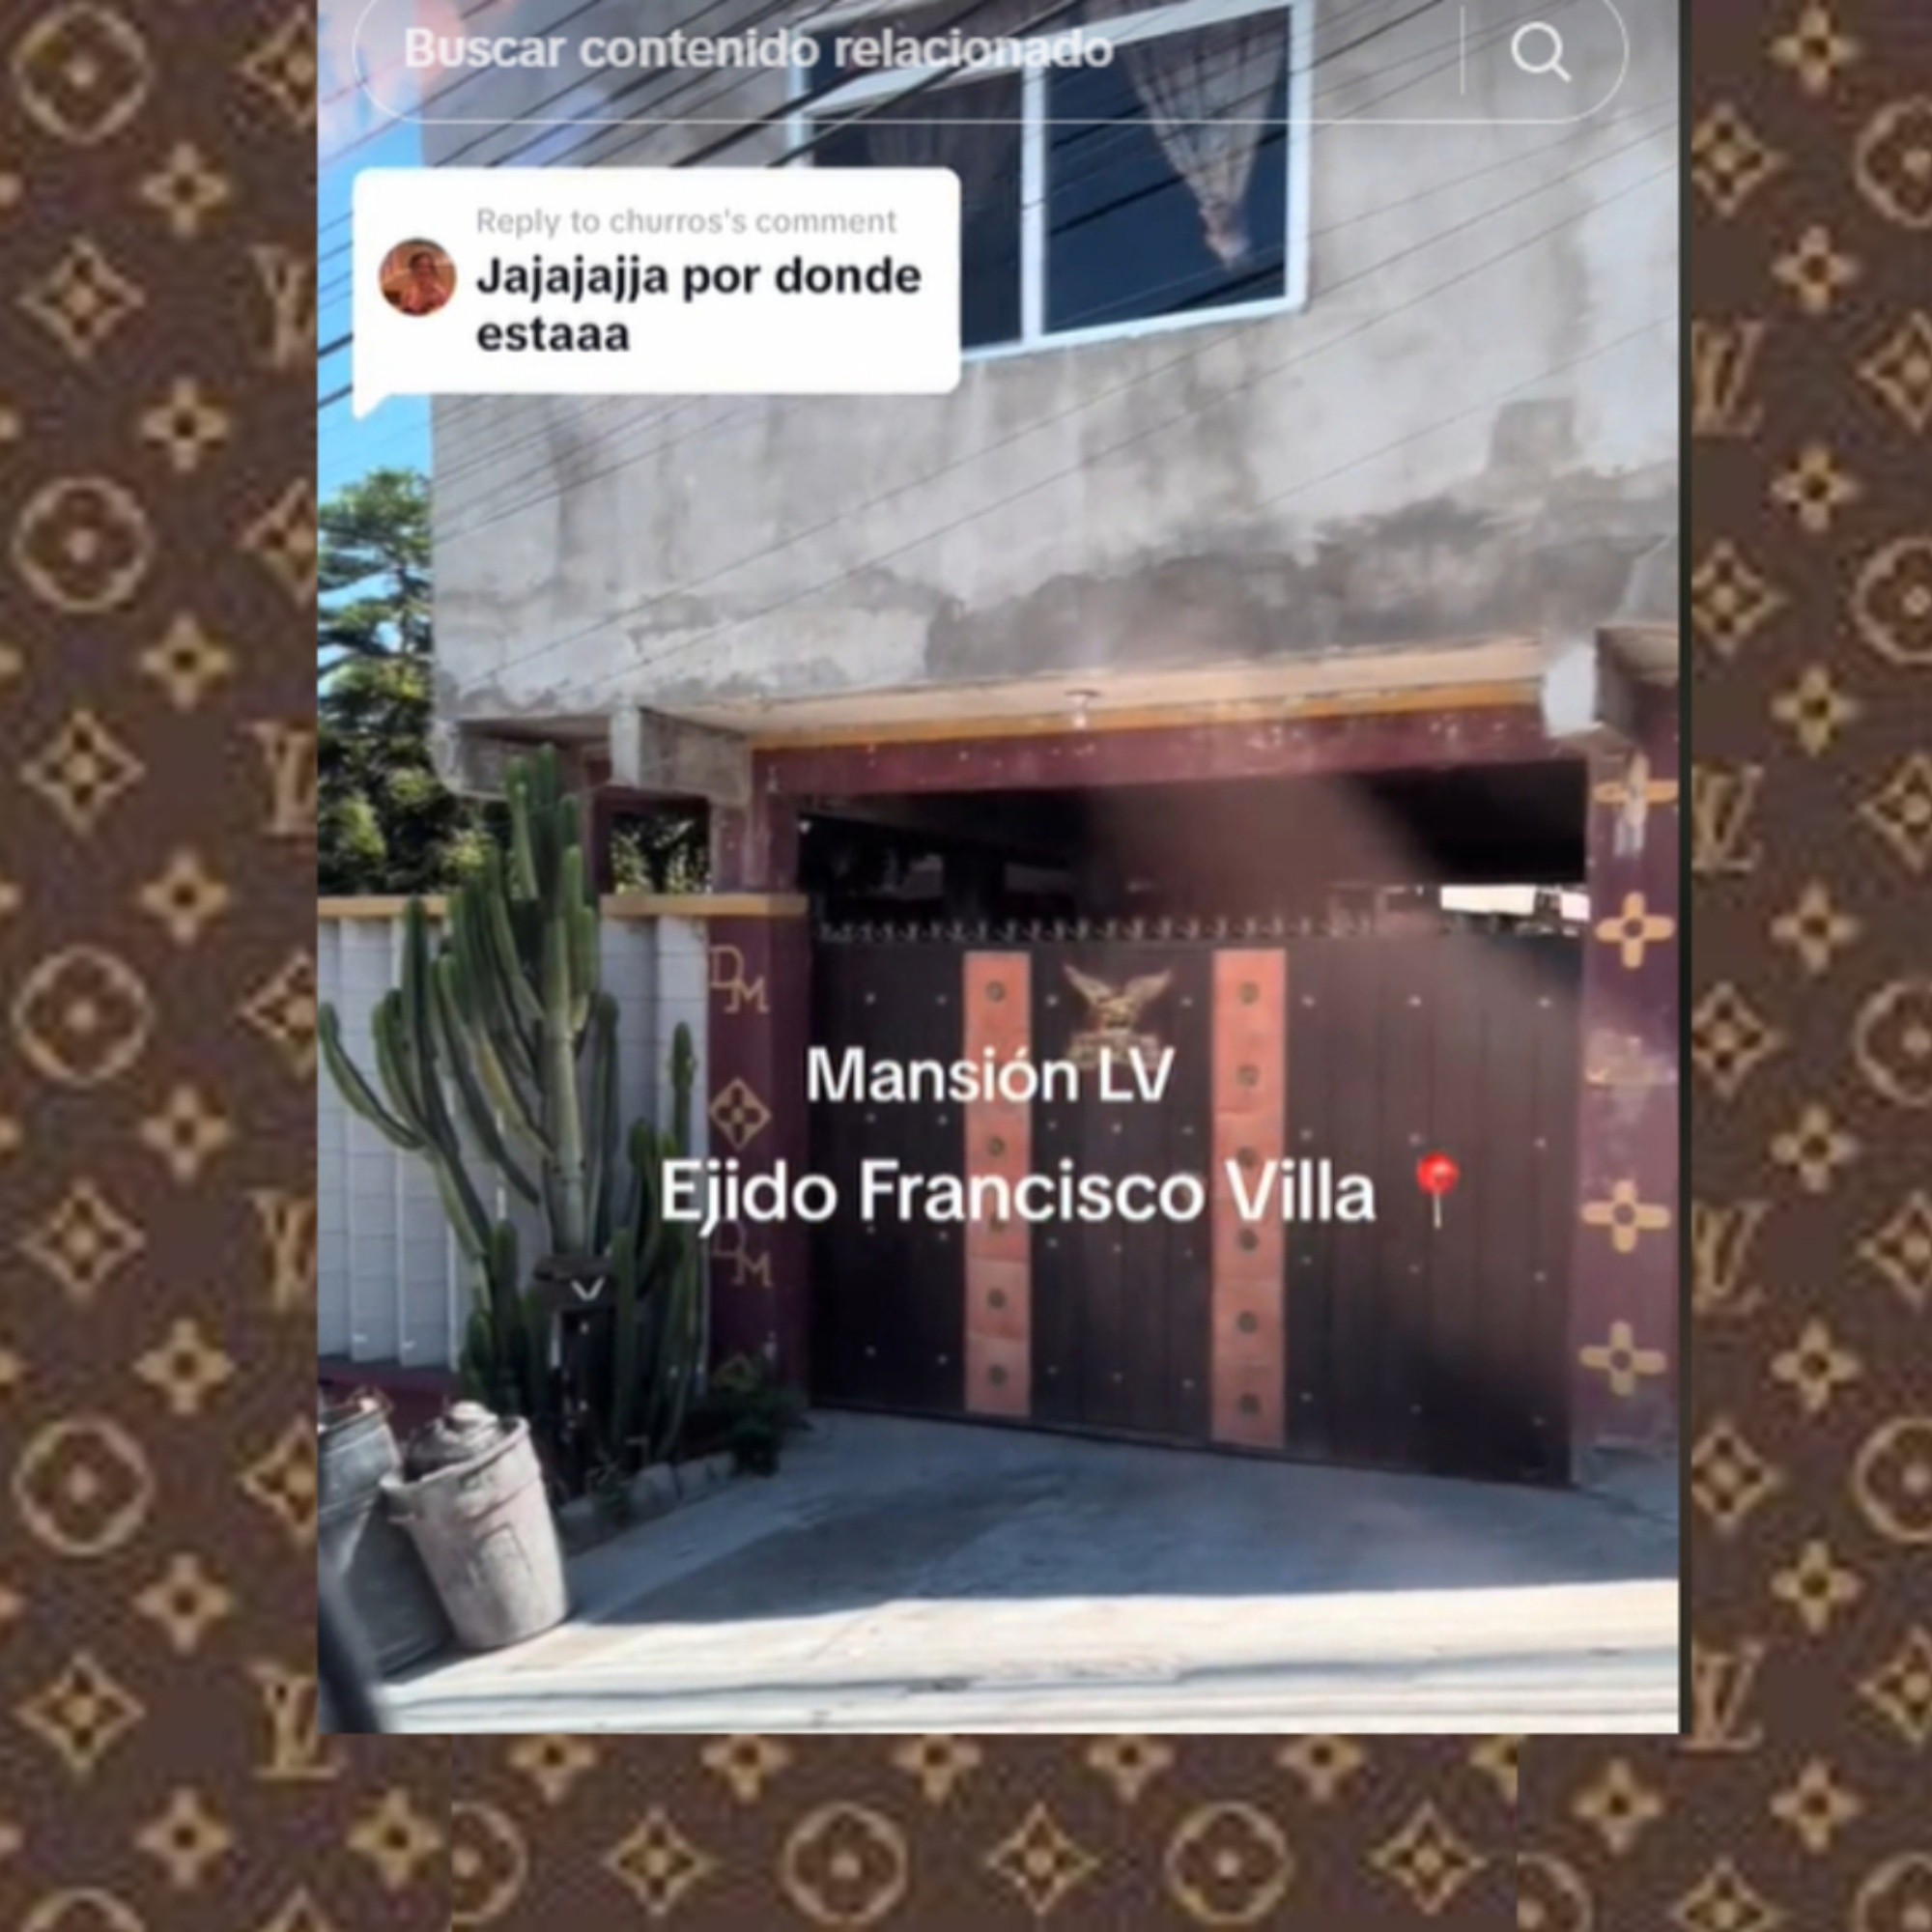 Casa con logos de Louis Vuitton en Tijuana se vuelve viral en